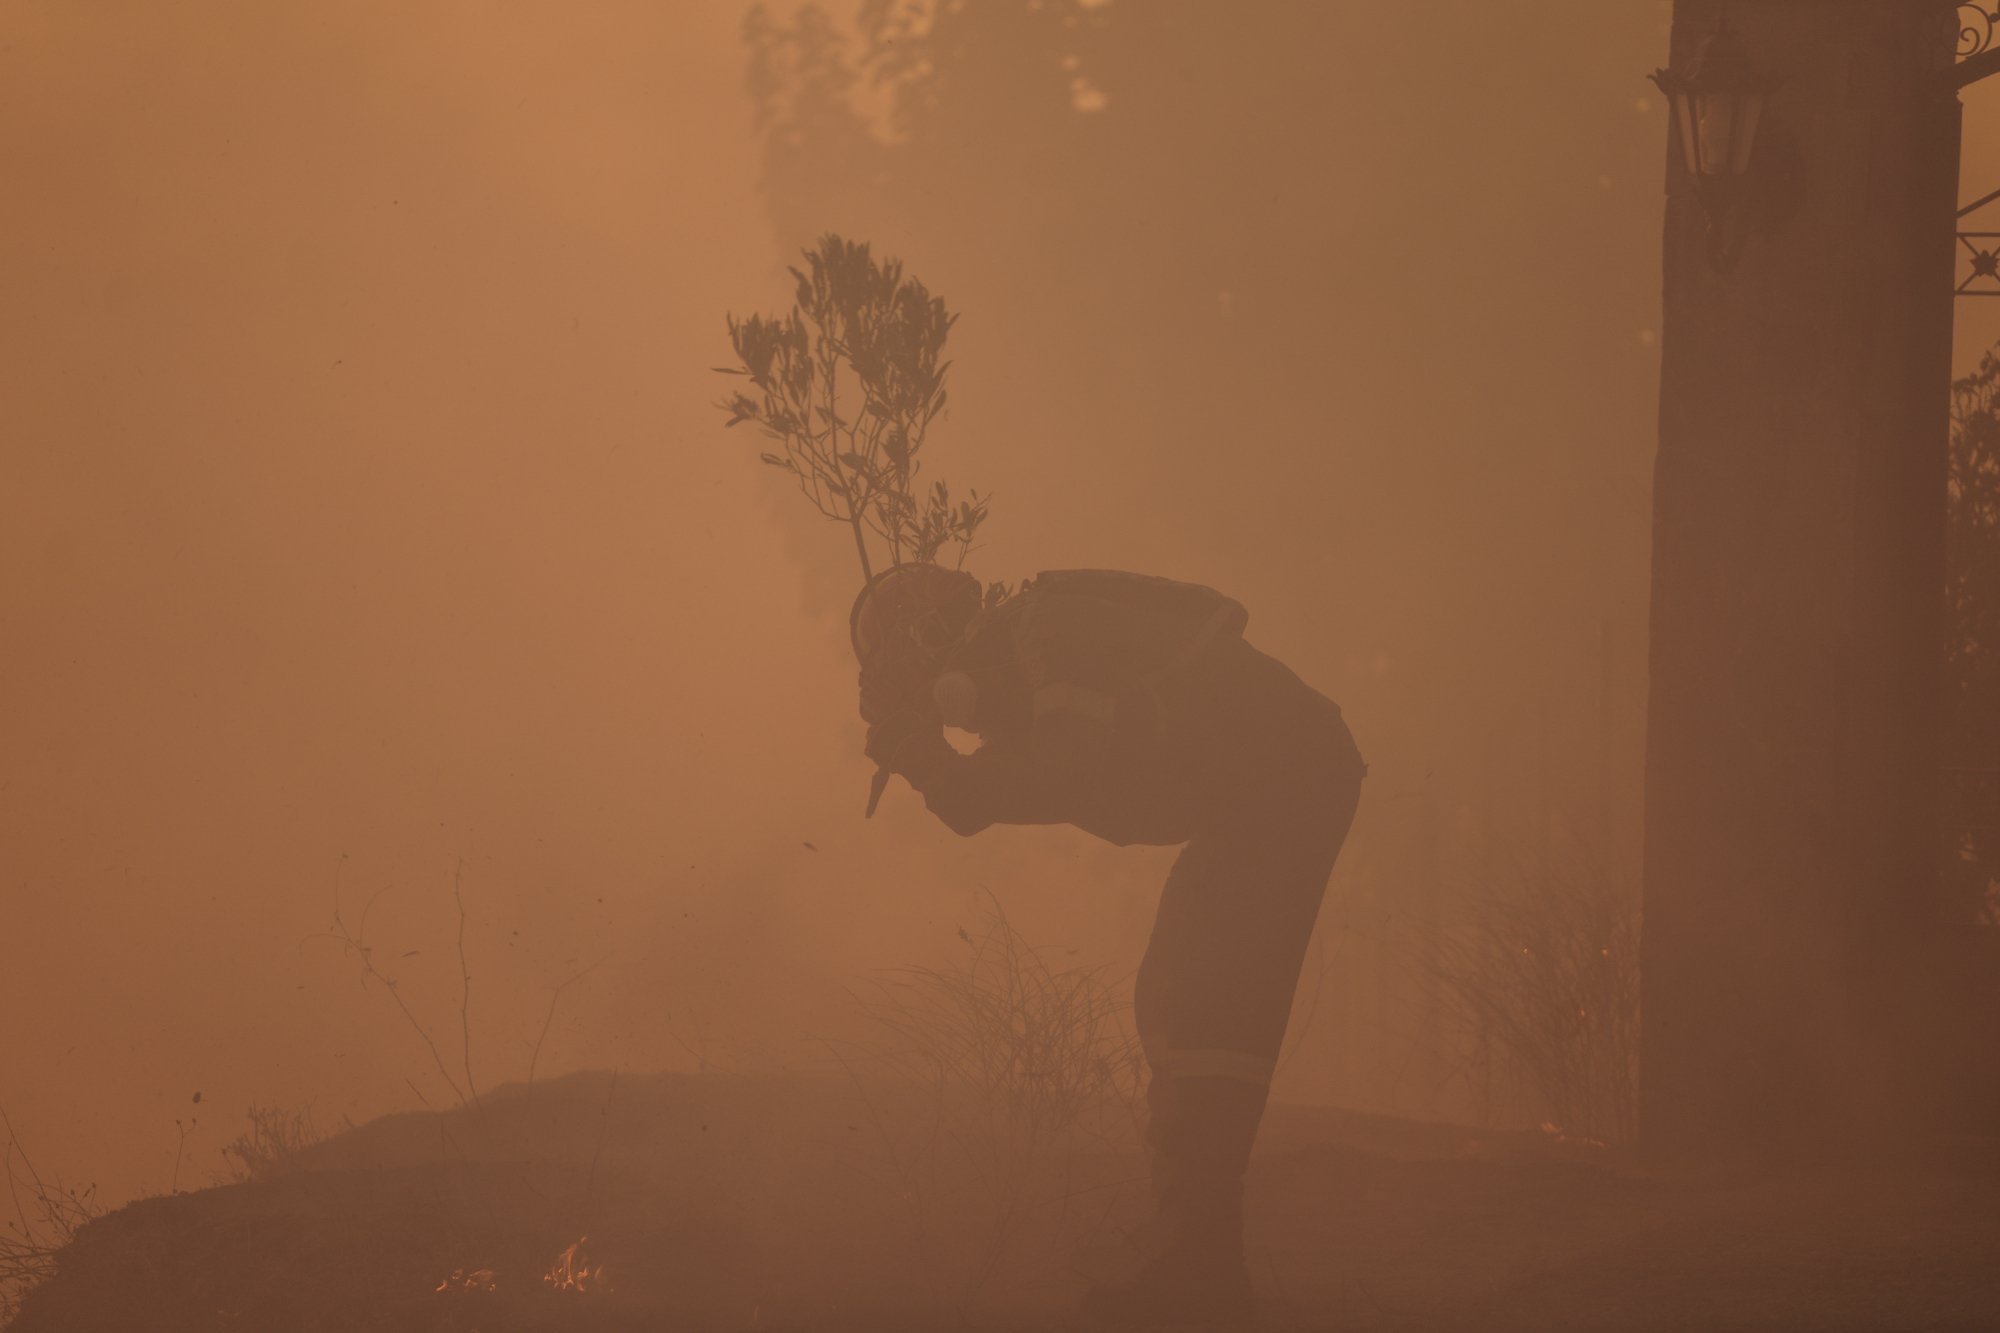 Κούραση, ανησυχία, λύσσα για νίκη στη ματιά της - Συγκλονιστική φωτογραφία πυροσβέστη